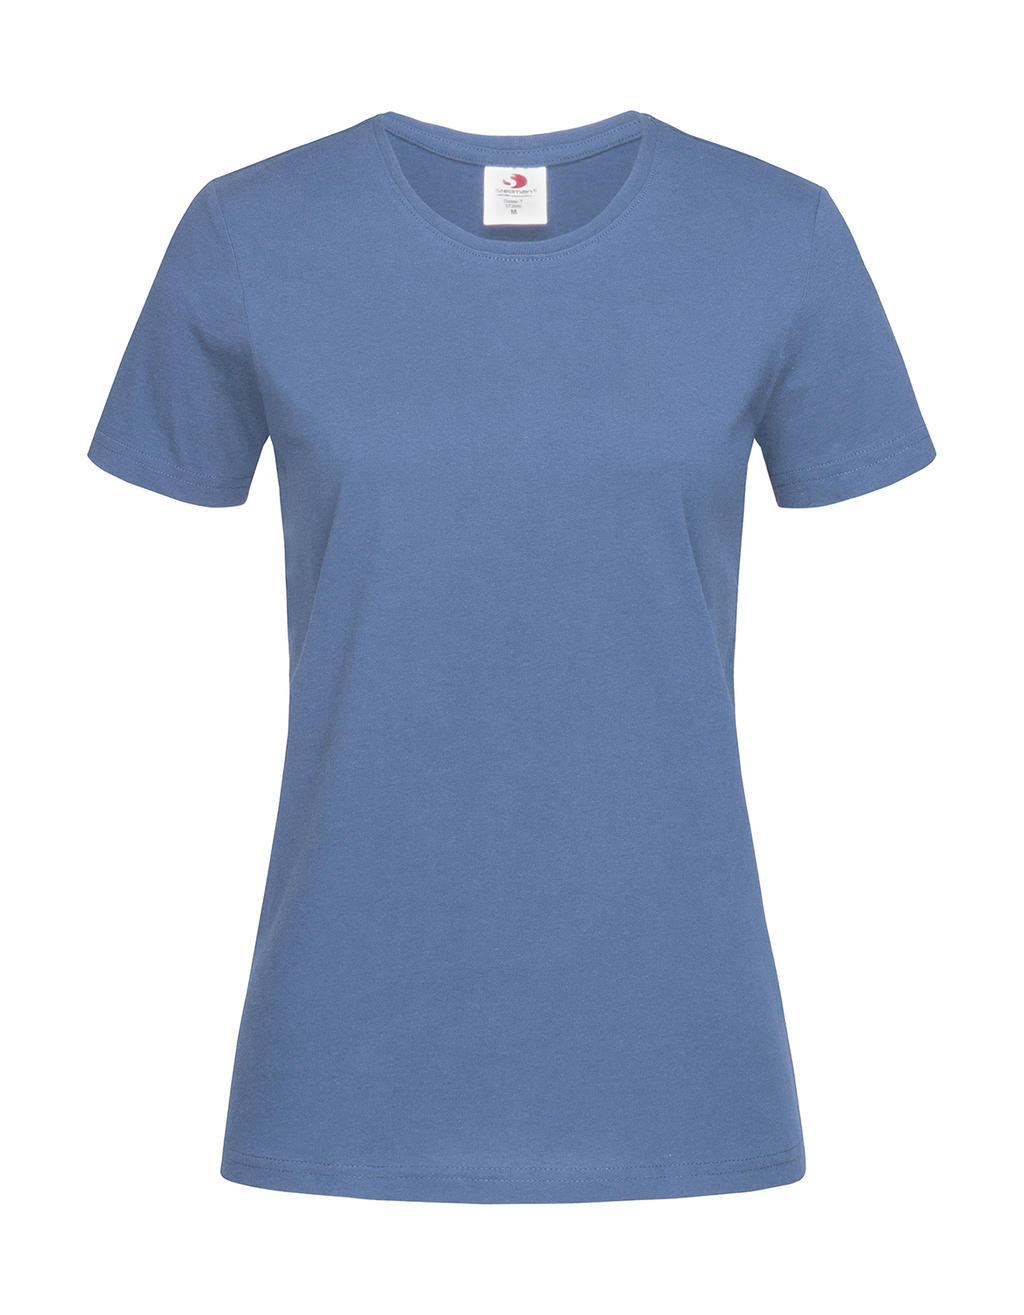 Tričko dámské Stedman Fitted s kulatým výstřihem - středně modré, XL